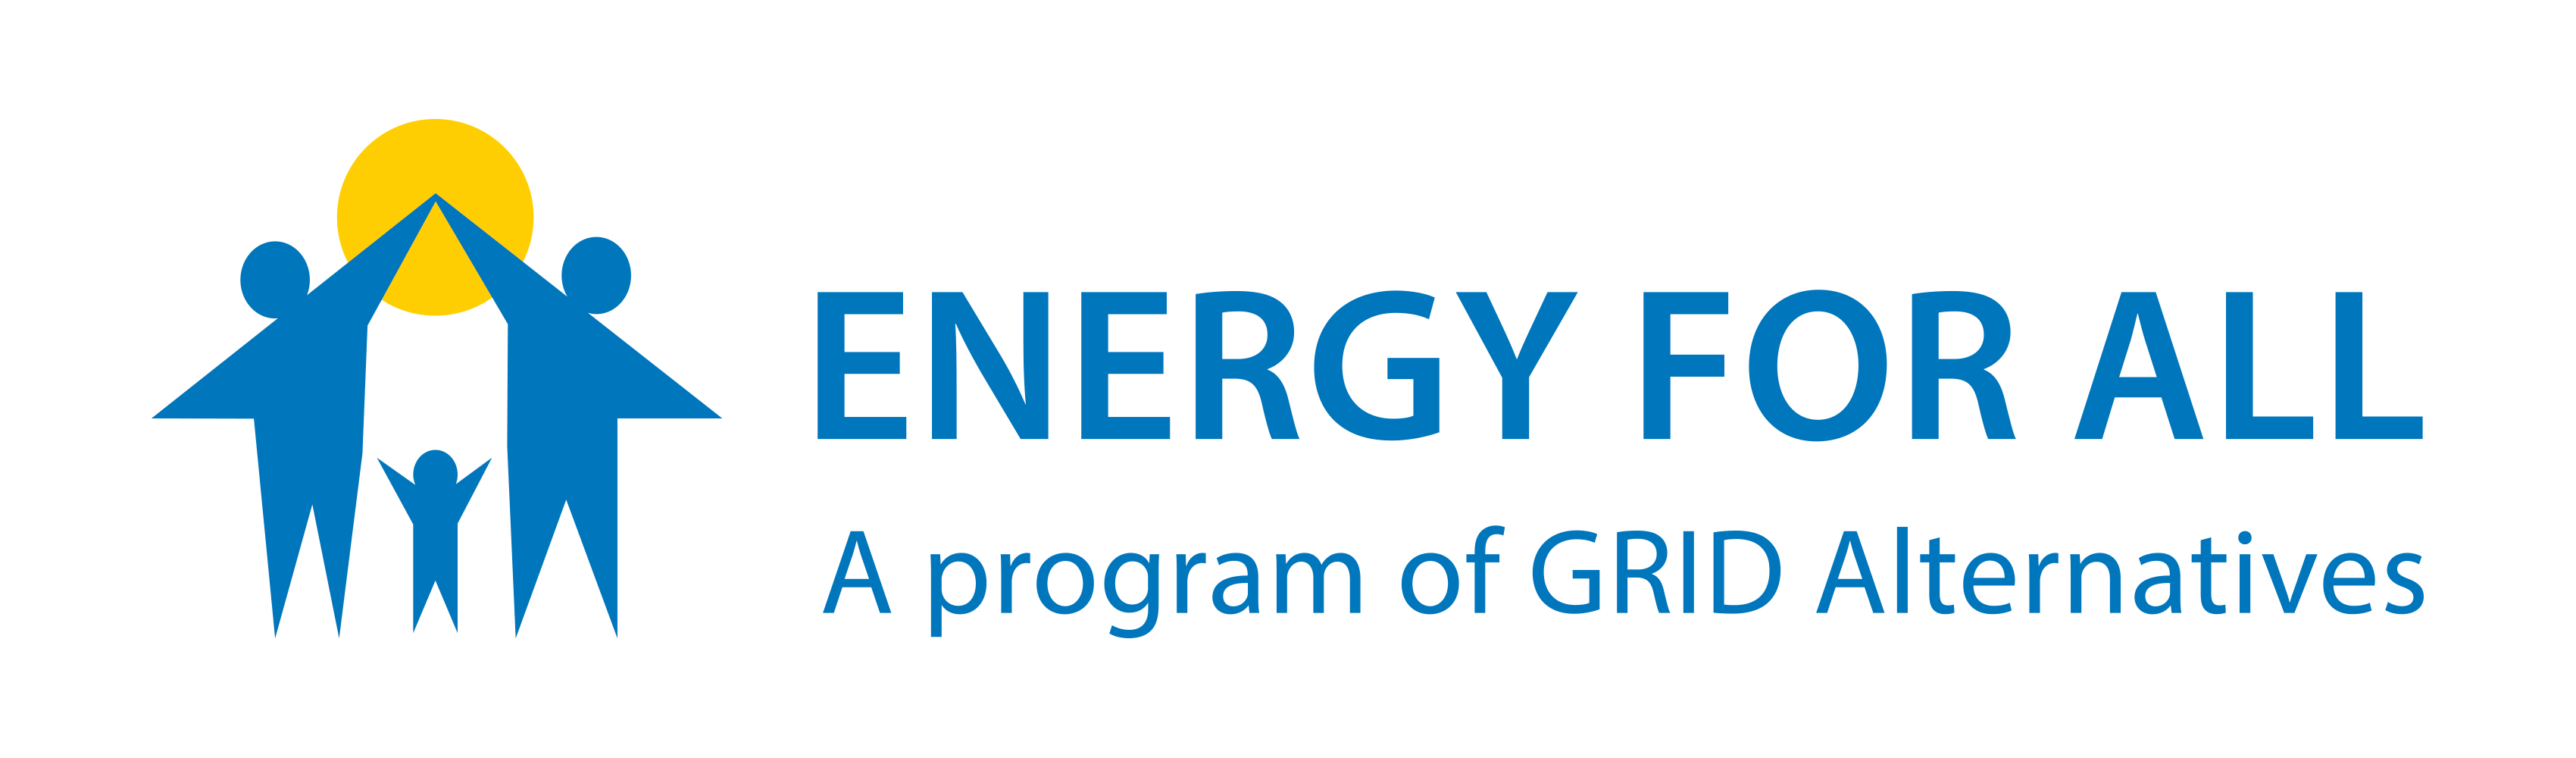 логотип, говорит программа Energy For All A программы GRID Alternatives, иллюстрация двух родителей, дающих пять ребенку за солнцем